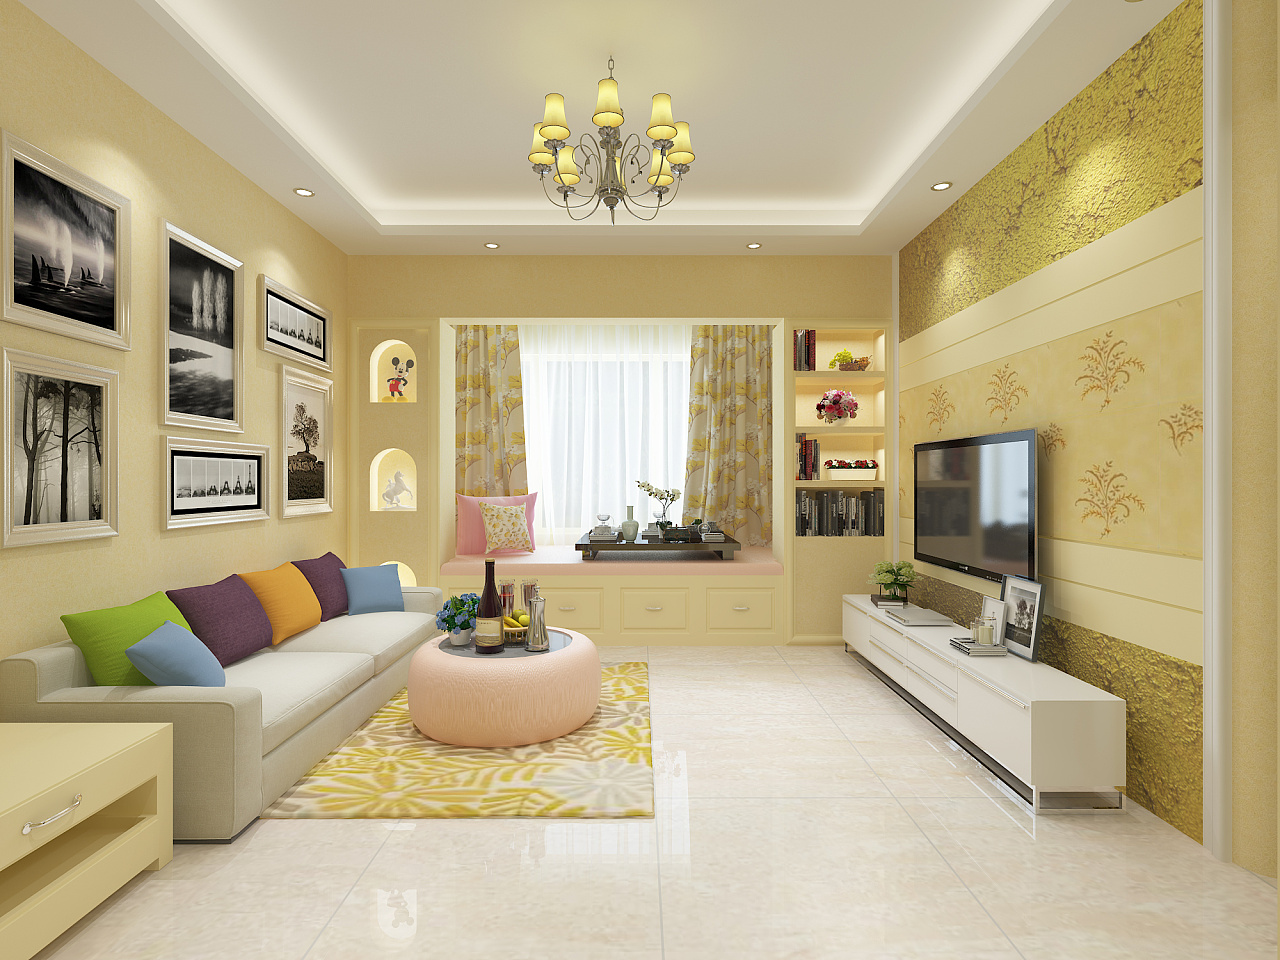 现代客厅室内装修效果图设计高清图片下载-正版图片500413937-摄图网